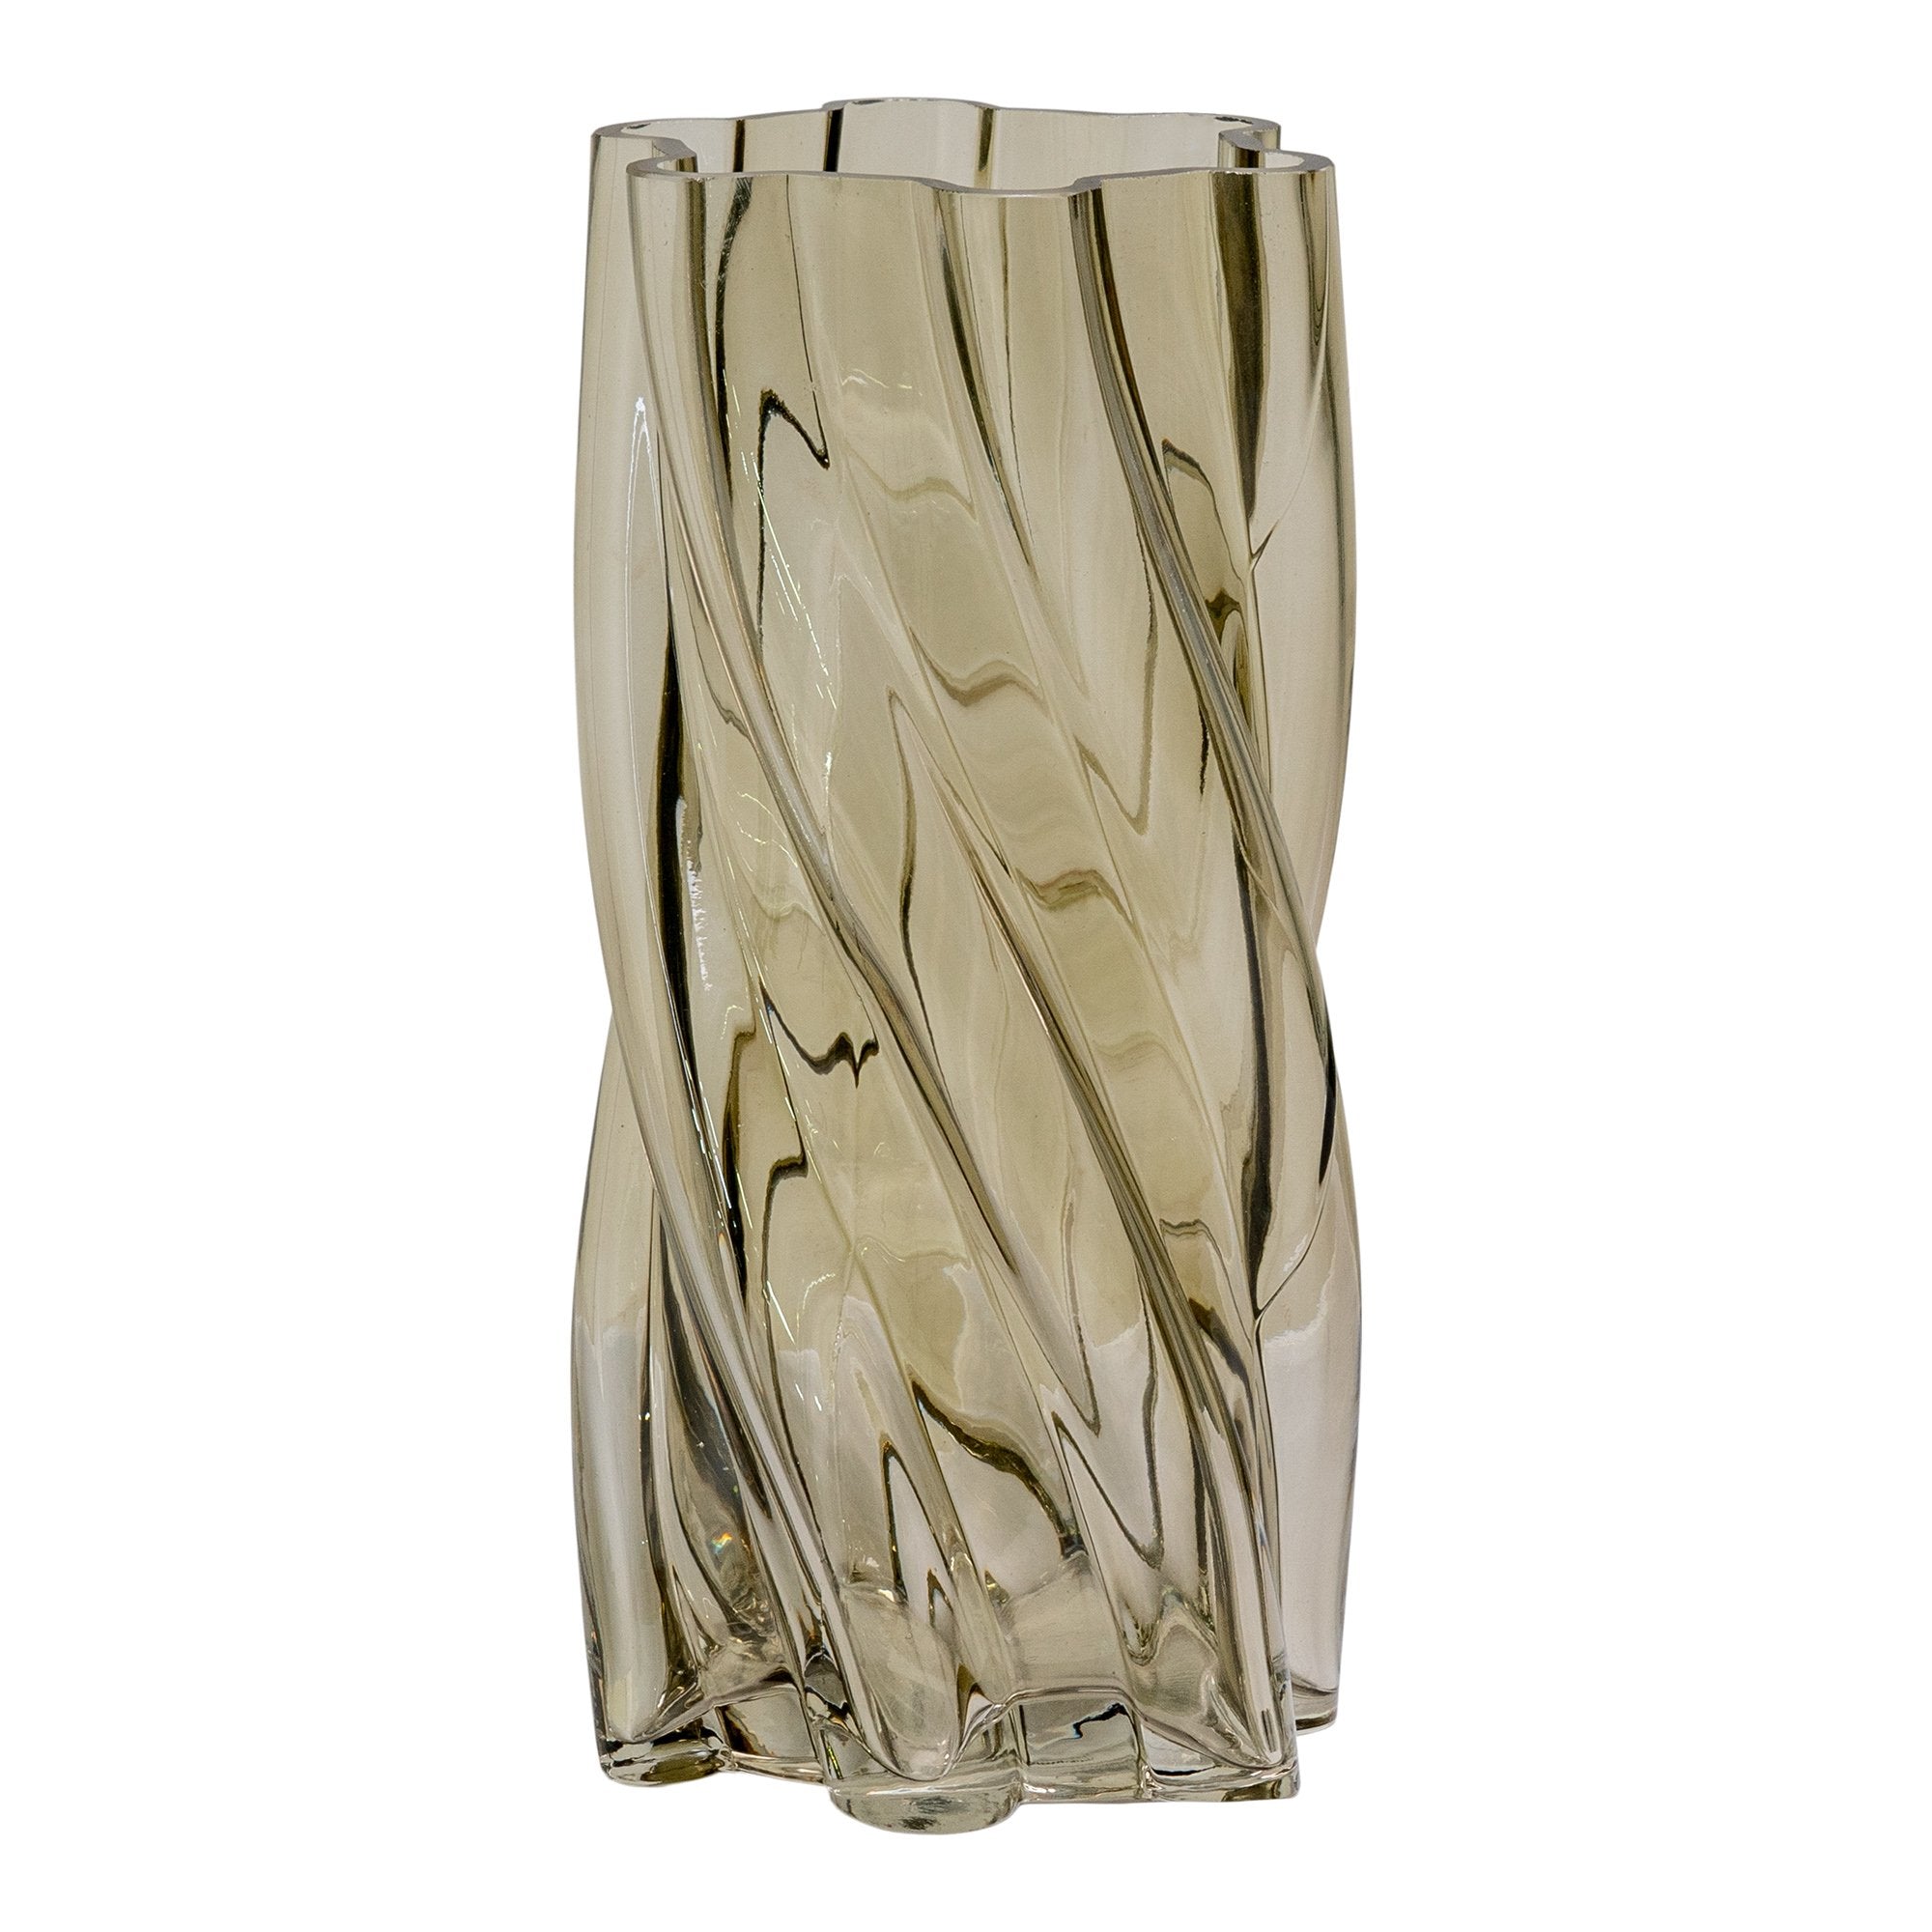 Vase - Vase, Mundblæst Glas, Røget Grøn, Ø12,5X25 Cm ⎮ 5713917029228 ⎮ 4441379 